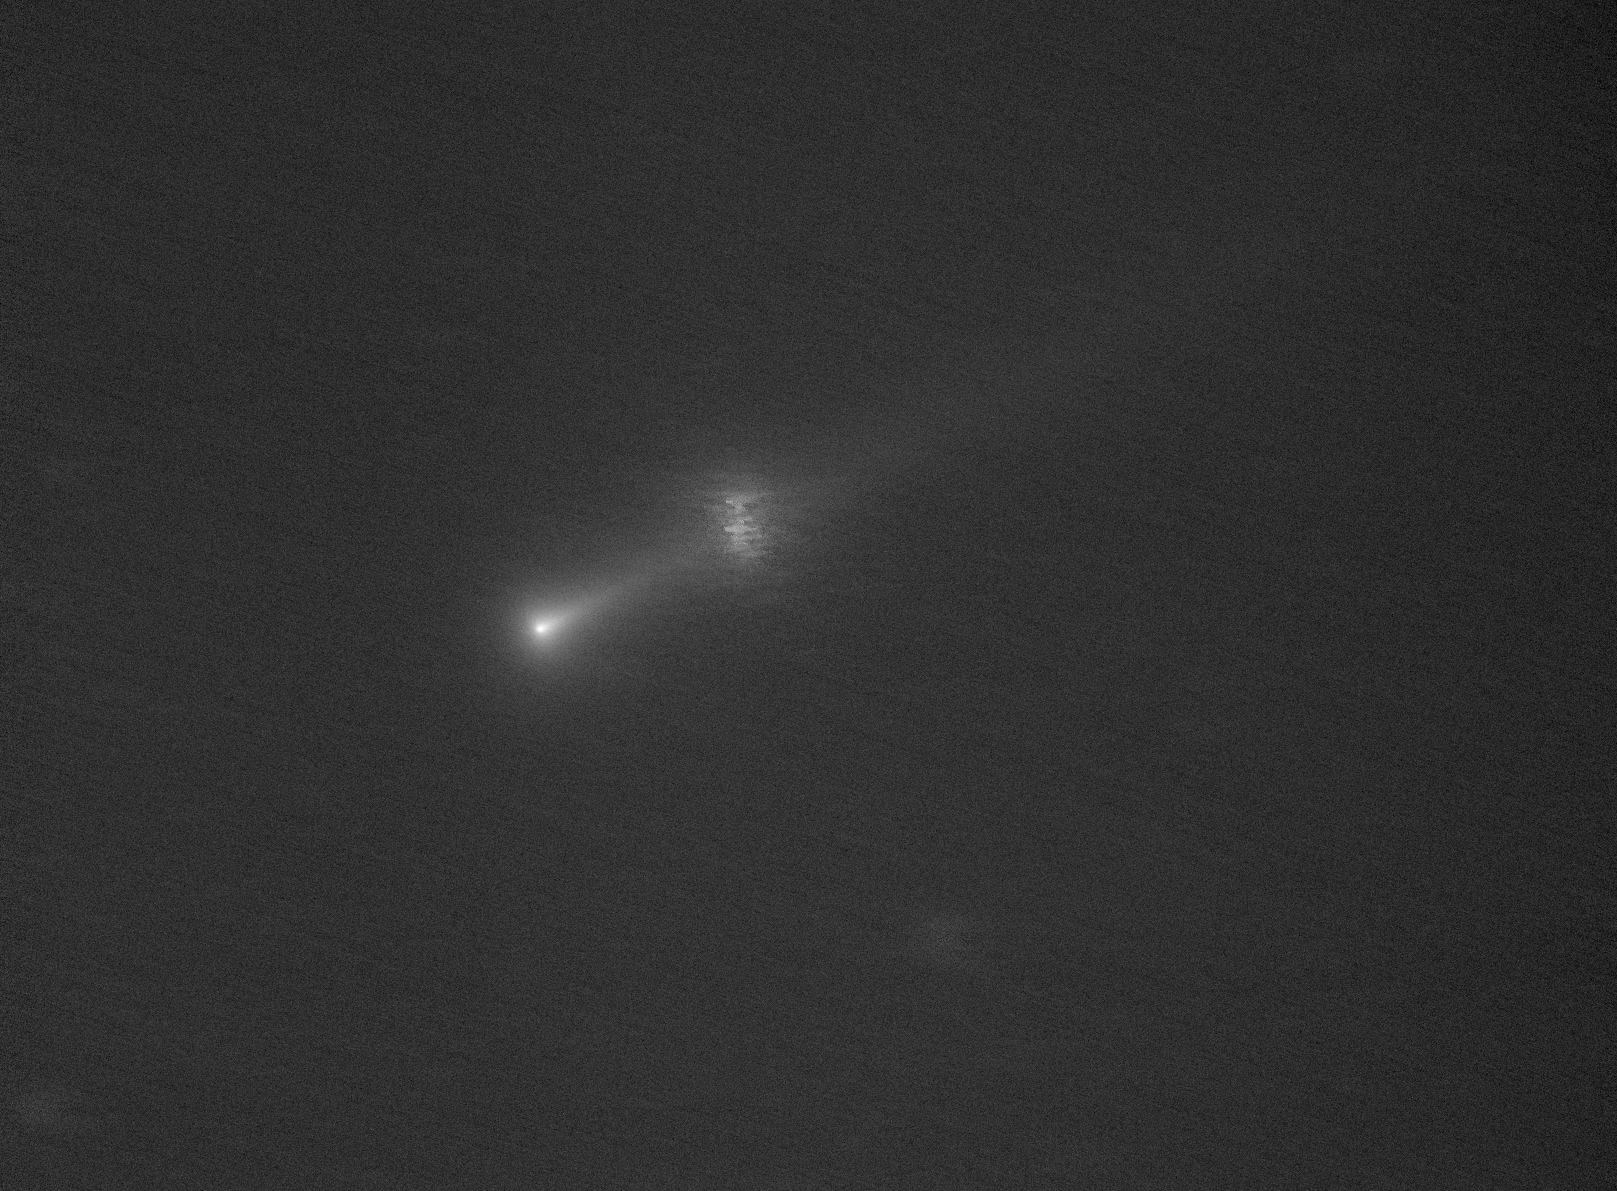 C/2021 A1 Leonard i M3 el dia 3 de desembre, des de l'Observatori Can Roig, Llagostera, Rafael Balaguer. 58 fotografies de 20-30 segons. En aquesta imatge el processat de Jordi Arnella centrat en el cometa mostra la llarga cua del Leonard